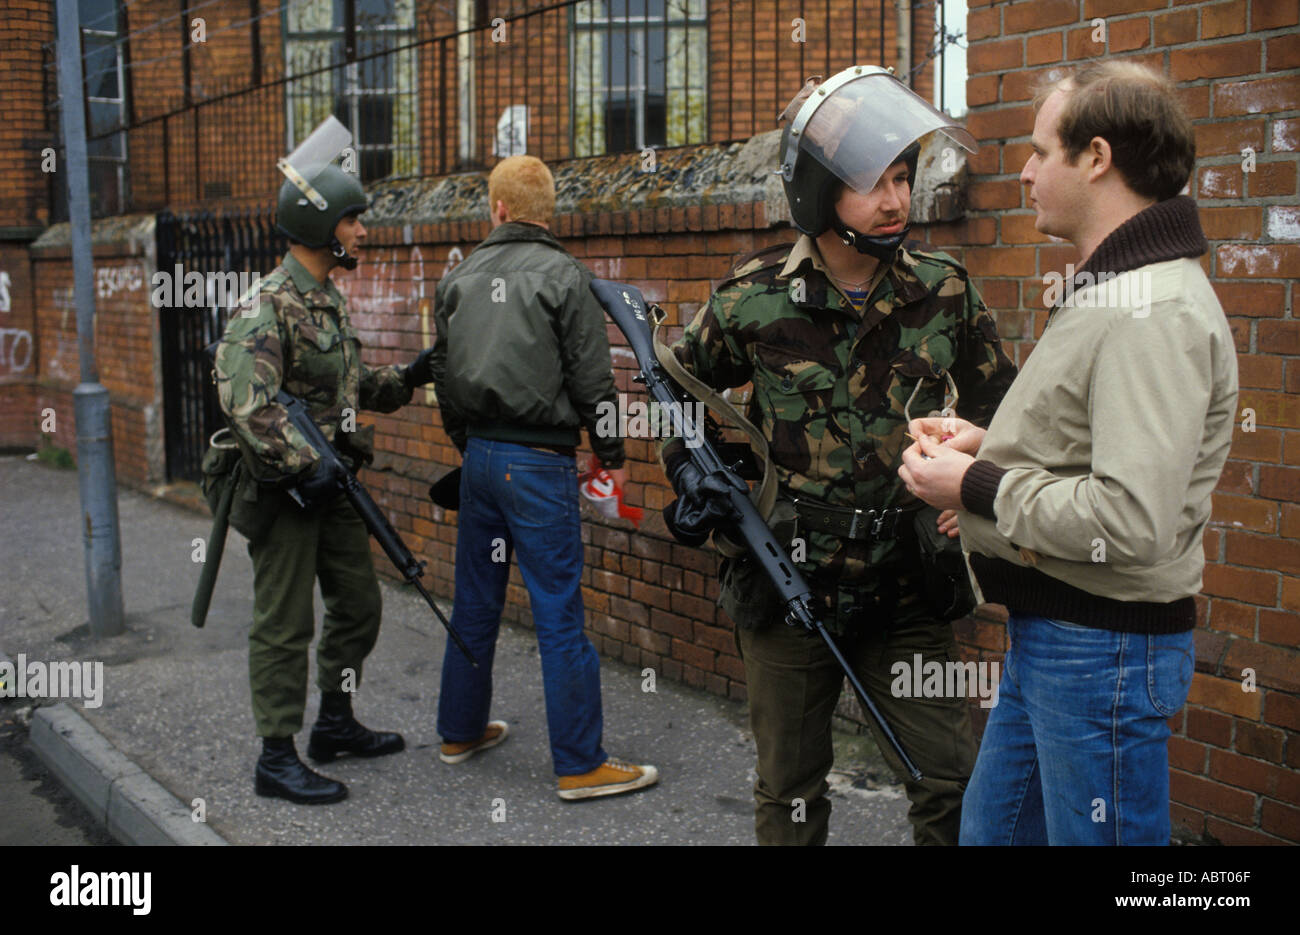 Troupes britanniques les troubles des années 1980, soldats armés de l'armée britannique en patrouille à pied, arrêter et fouiller les hommes dans la rue. Belfast Irlande du Nord 1981 Royaume-Uni. Banque D'Images